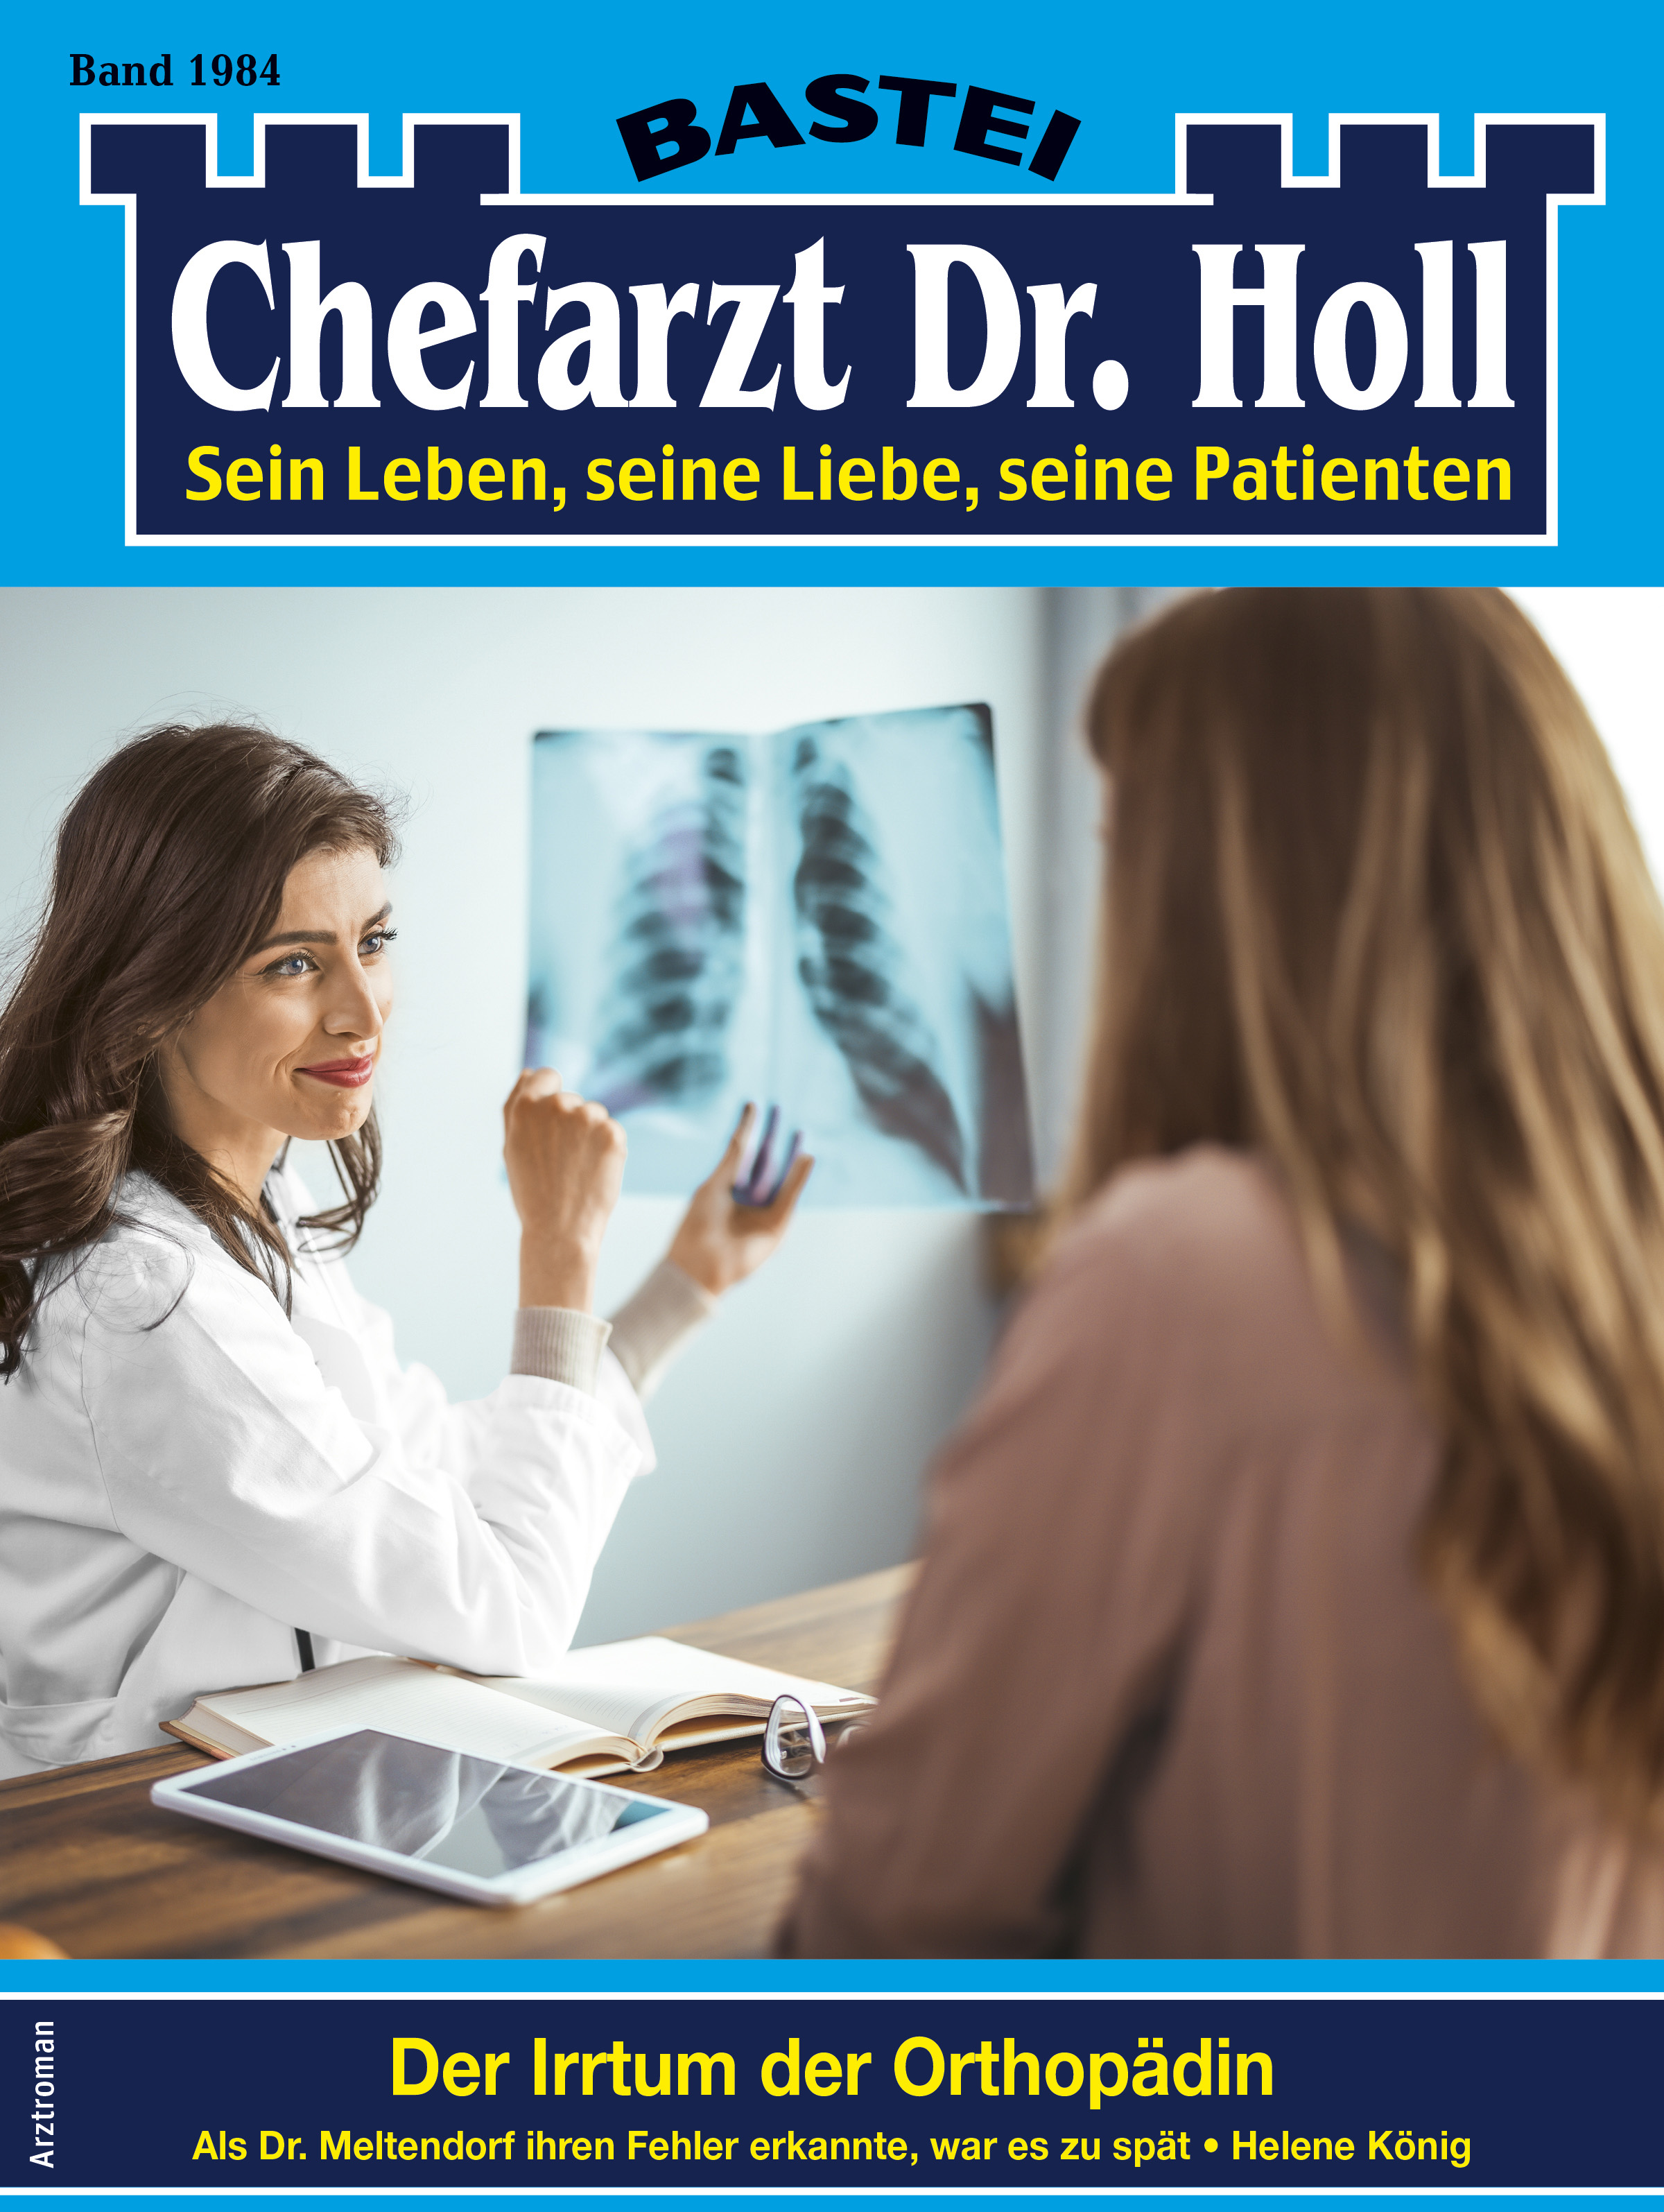 Chefarzt Dr. Holl